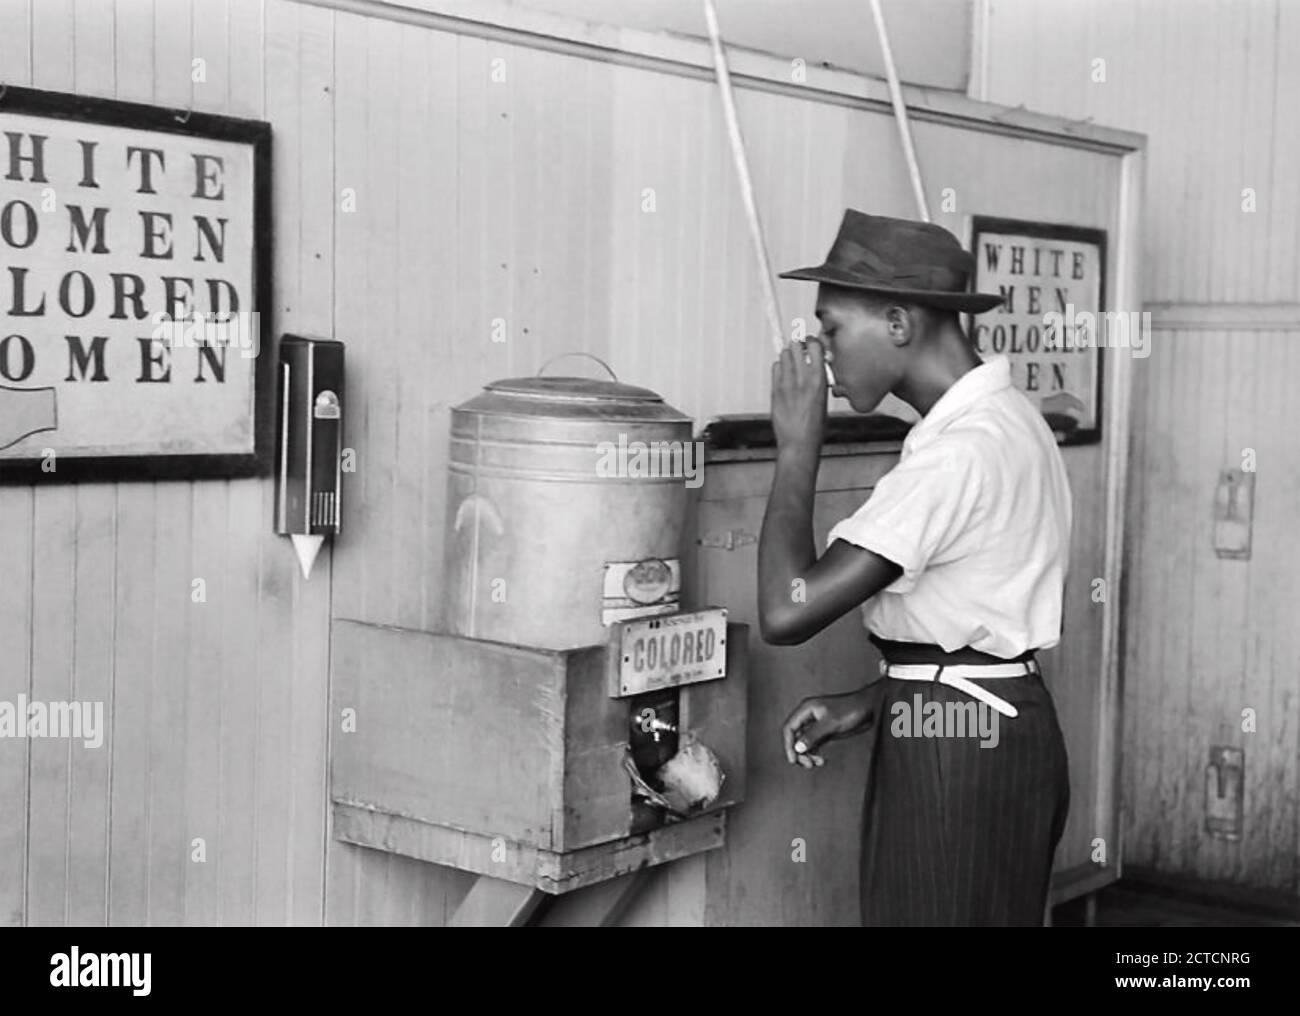 REFRIGERATORE D'ACQUA SEPARATO in un terminal di tram a Oklahoma City circa 1950 Foto Stock